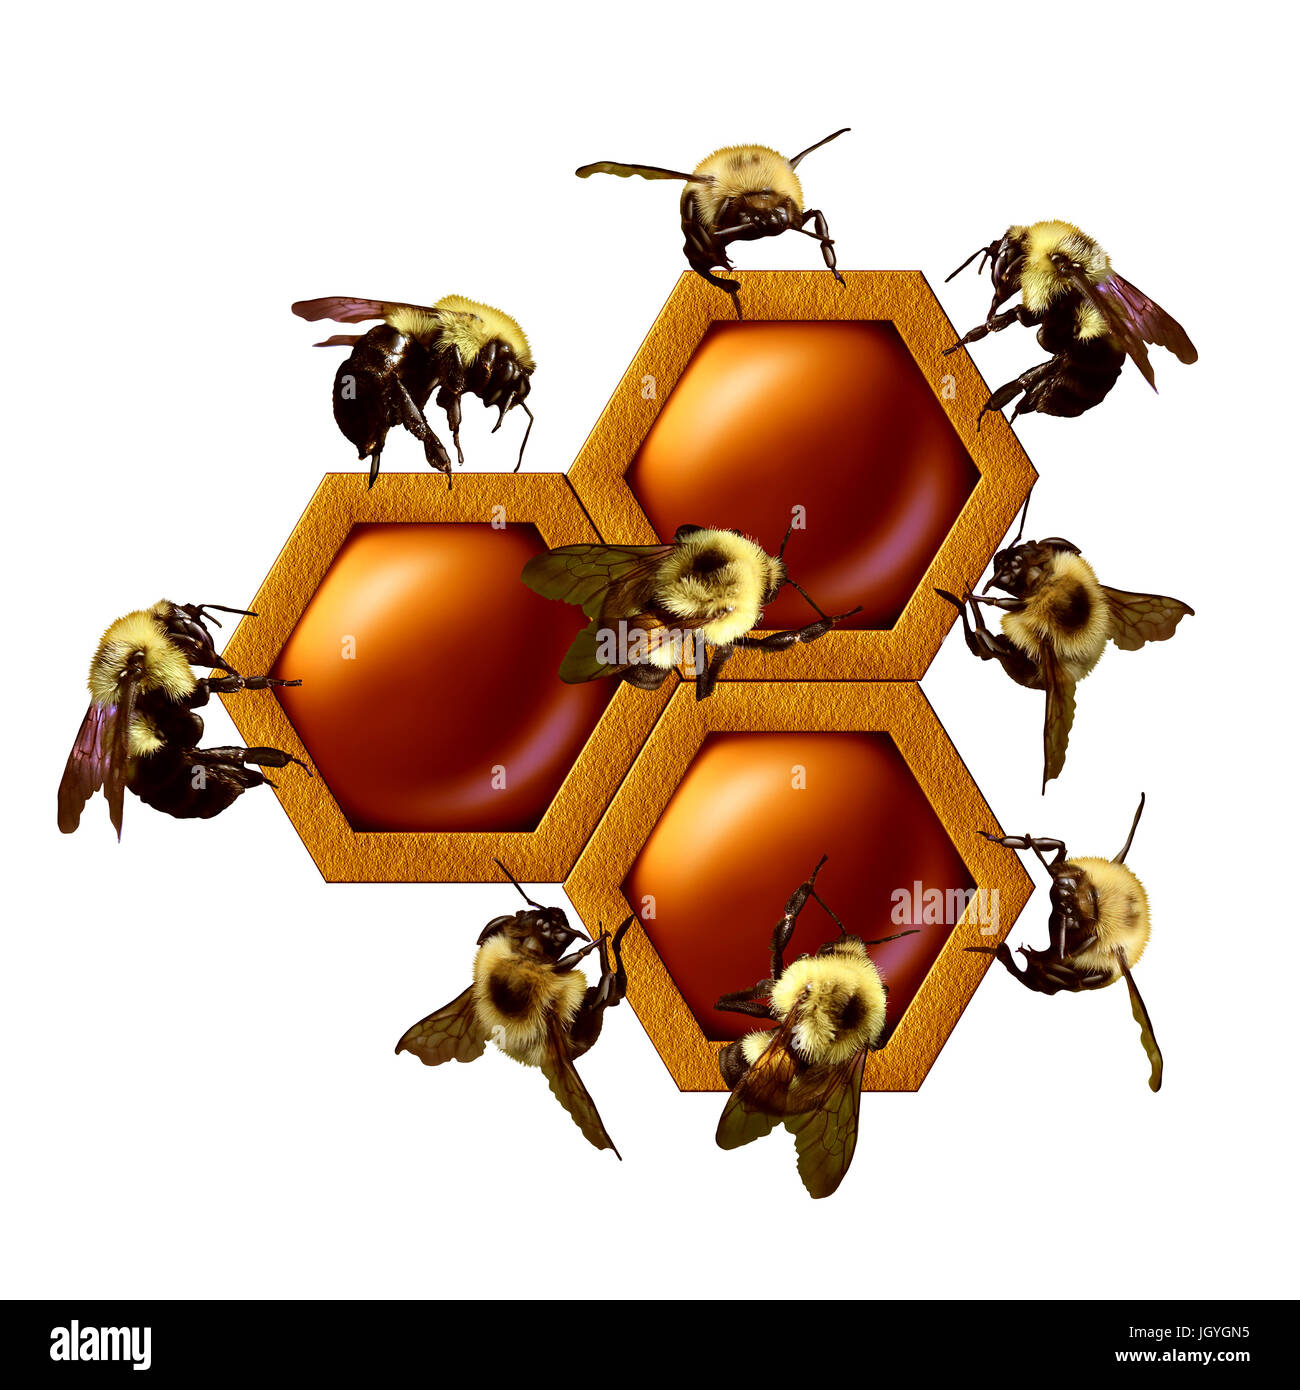 Teamarbeit-Projekt-Konzept als eine Gruppe von Arbeitsbienen als ein eingespieltes Team bauen einen geometrischen Honig Kamm als Unternehmen kooperieren. Stockfoto